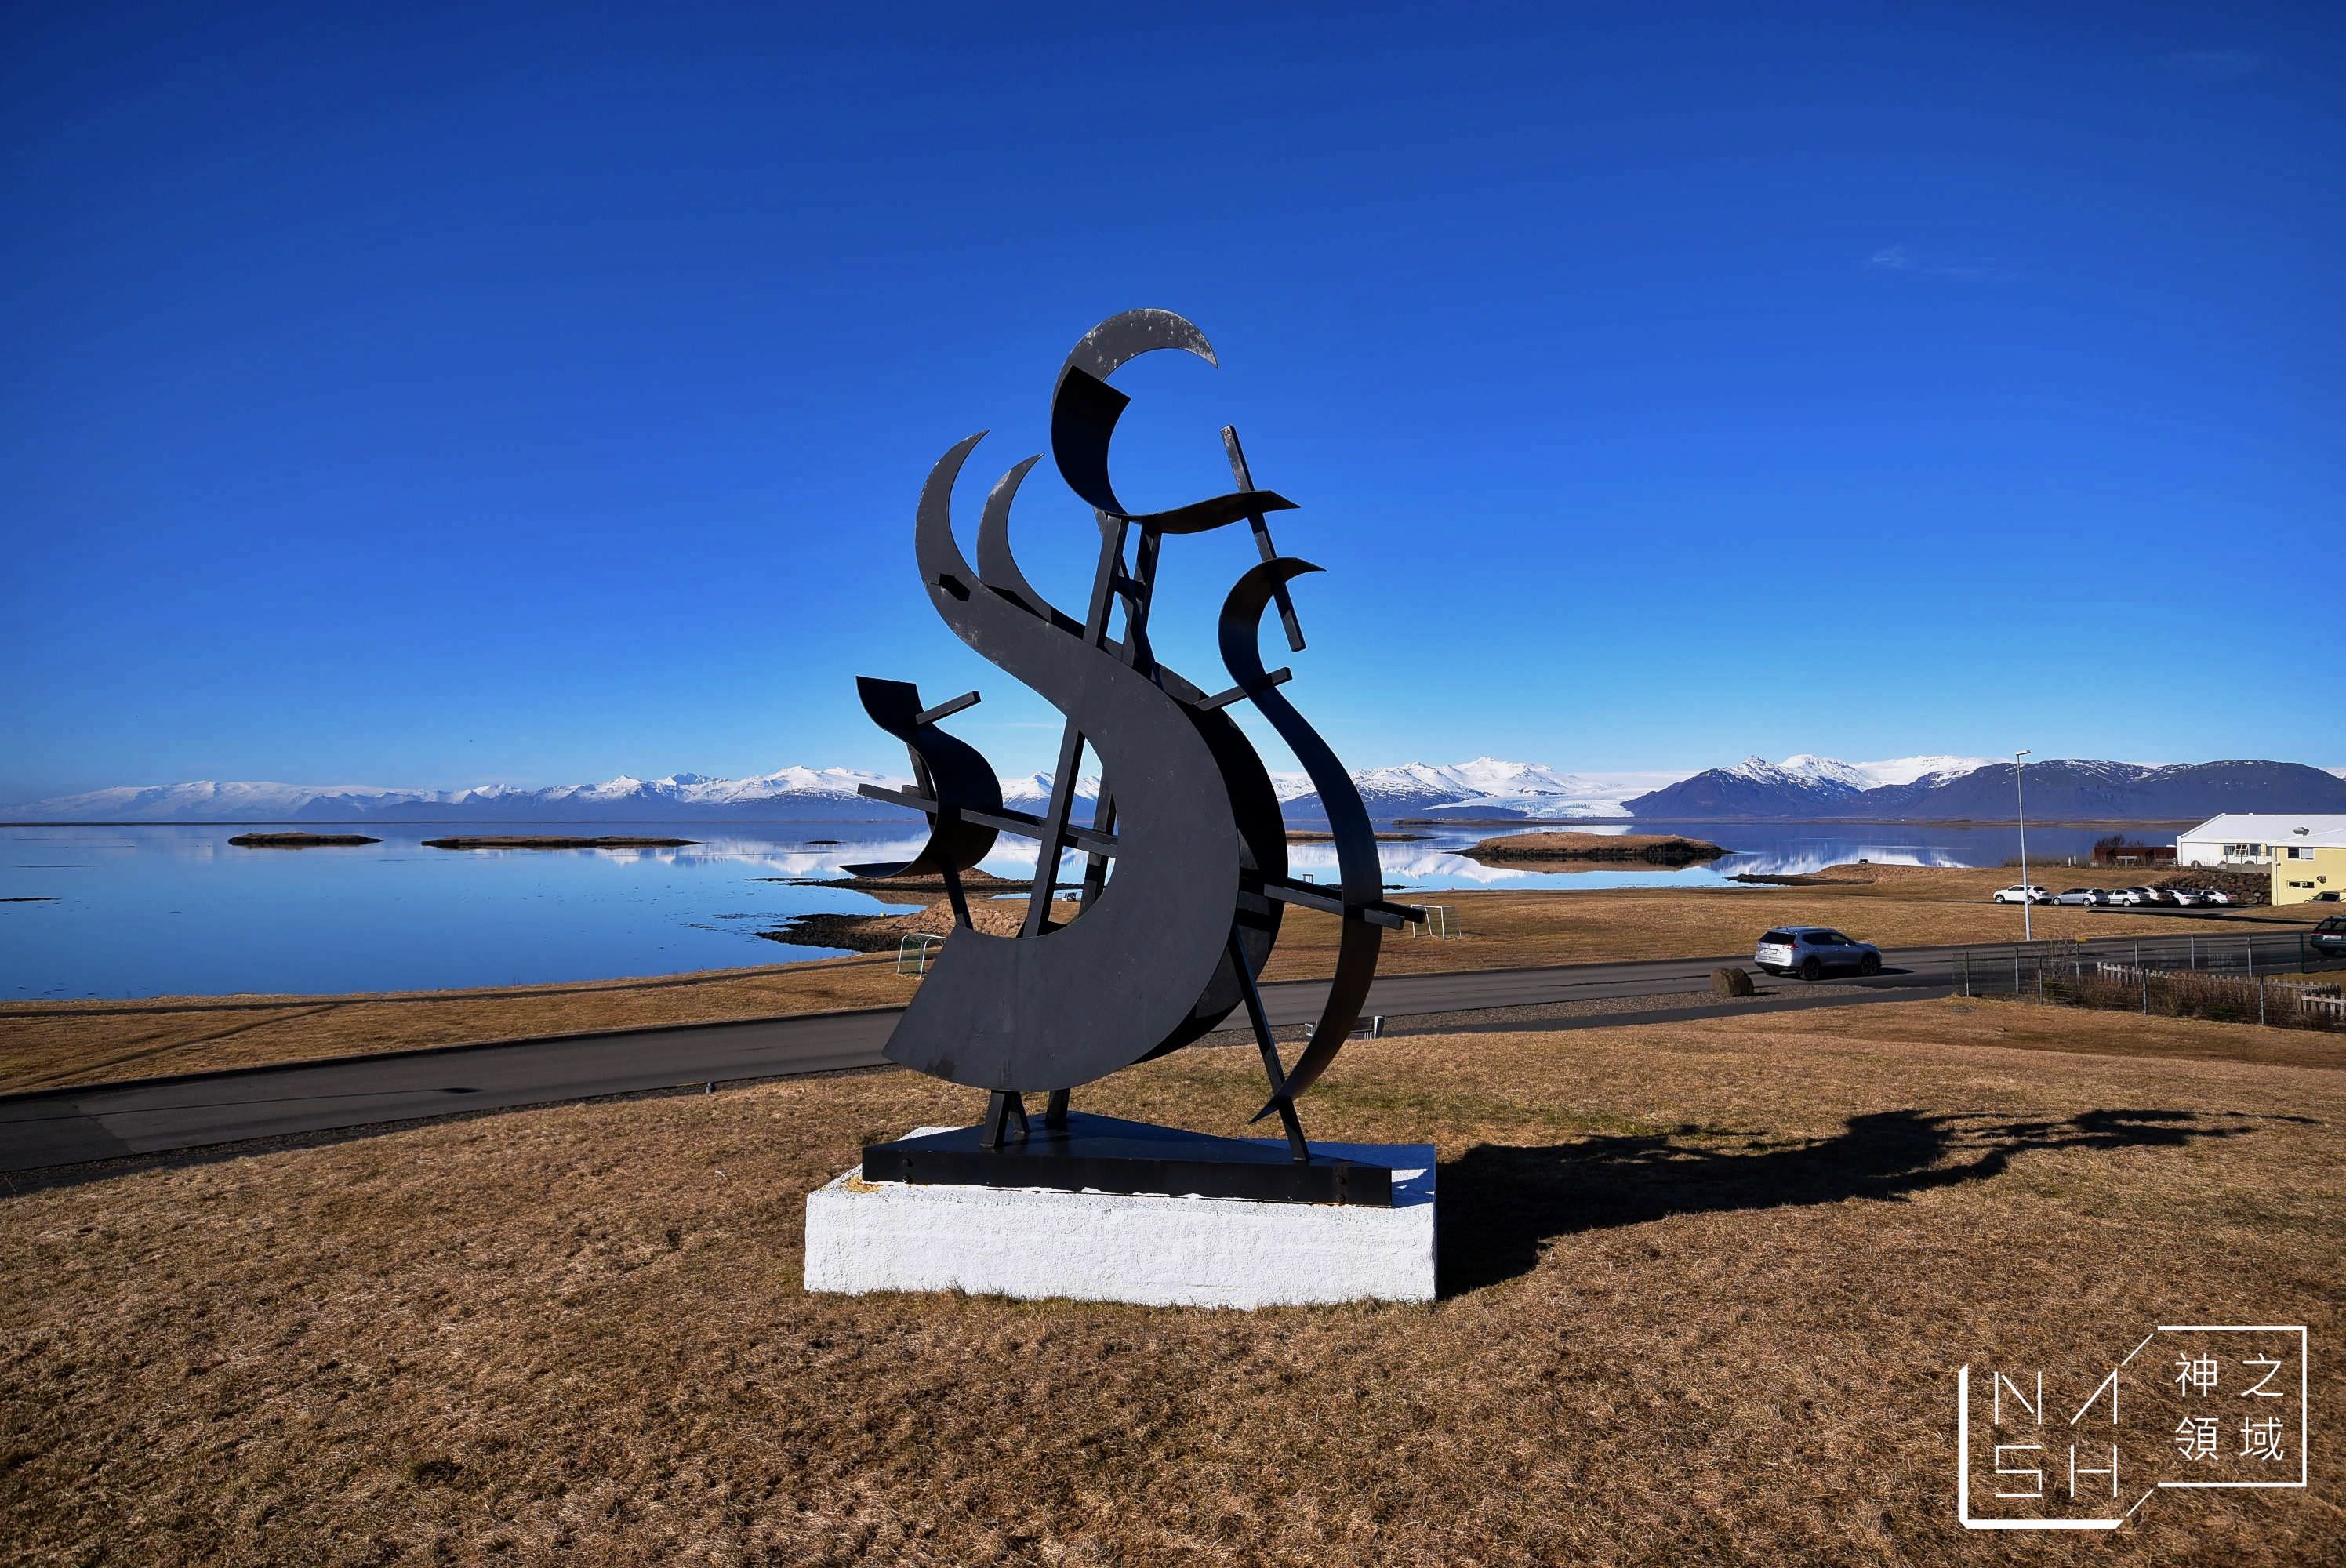 冰島赫本景點推薦,赫本Hofn,龍蝦,極光,冰島自由行環島景點推薦